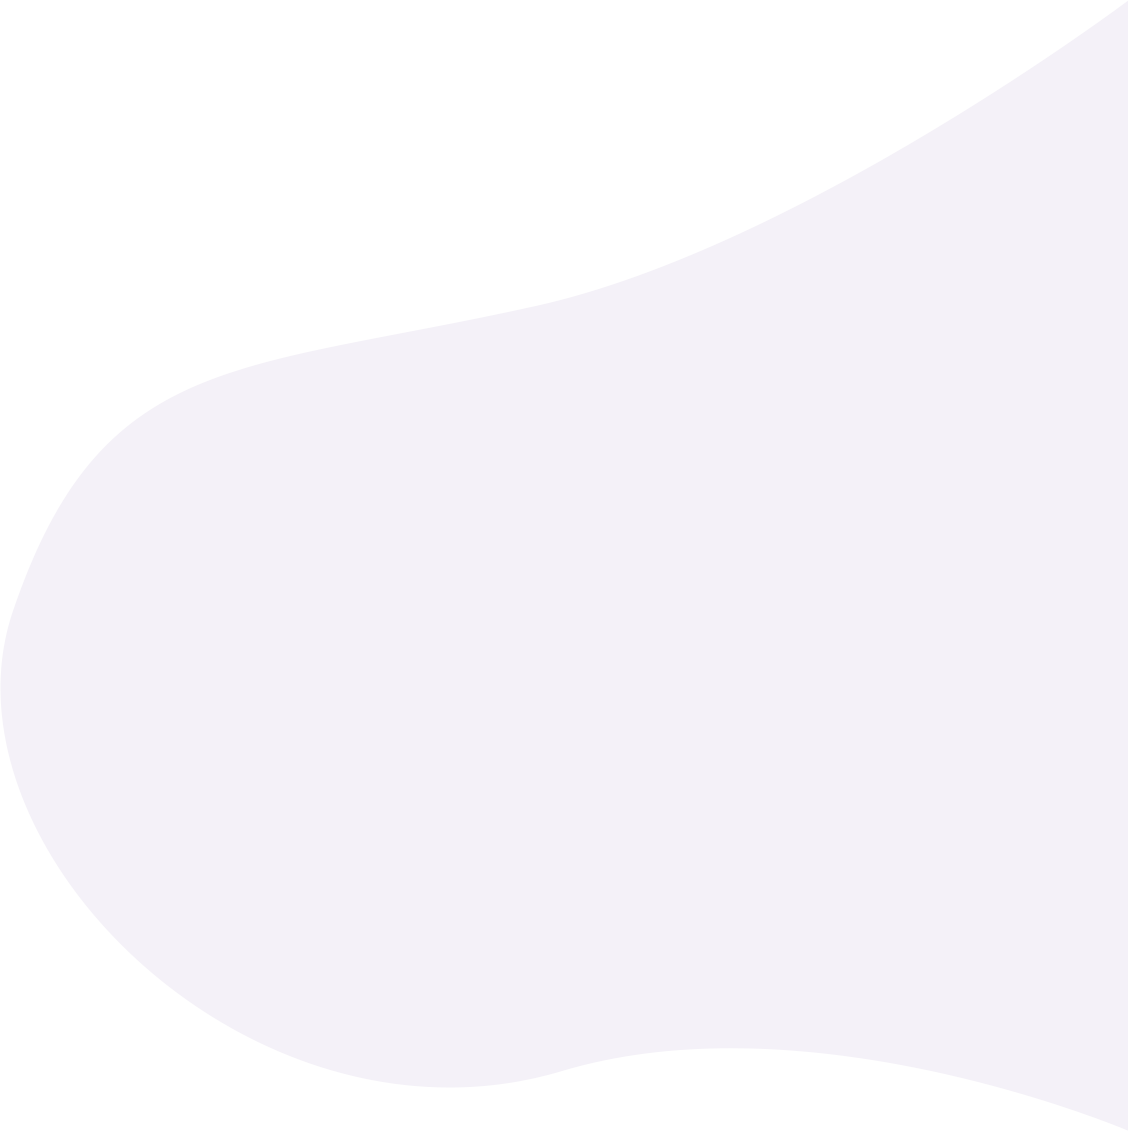 main shape bg image 2